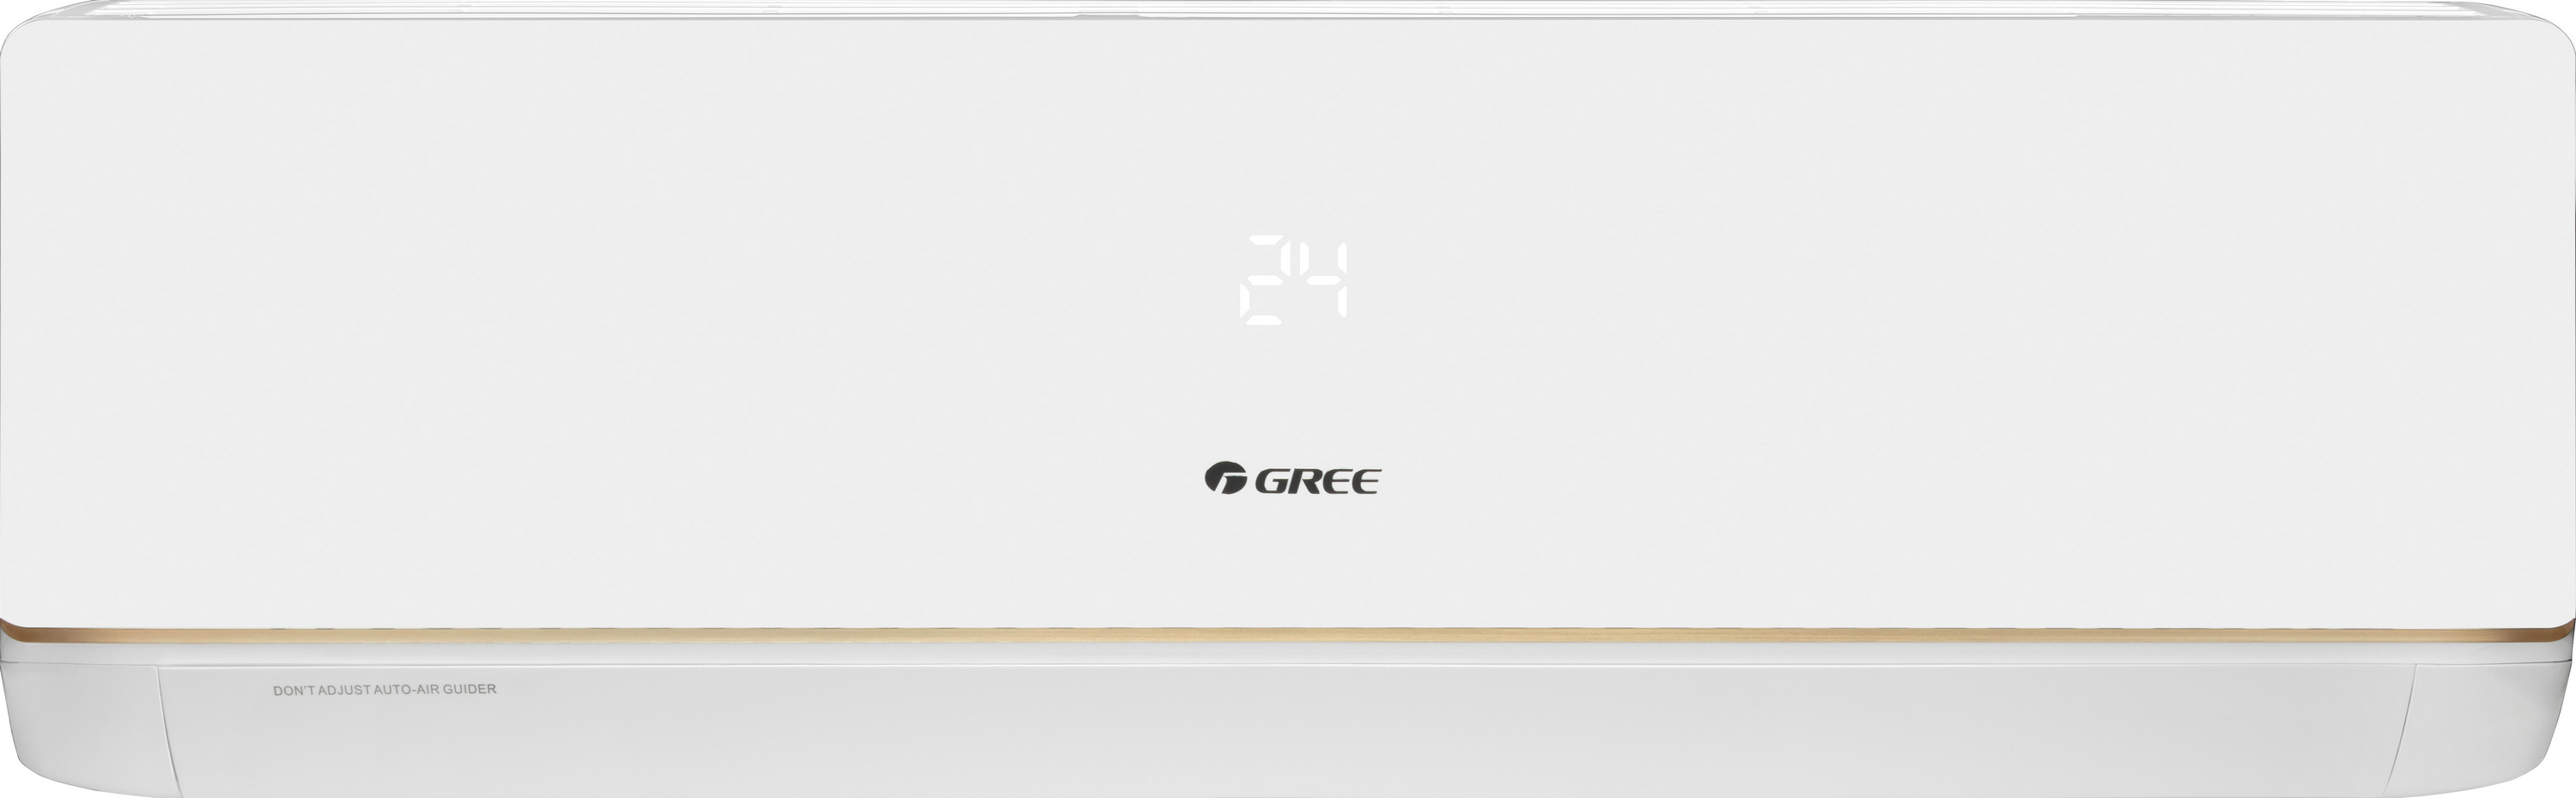 Кондиционер сплит-система Gree Bora Inverter R32 GWH24AAD-K6DNA5A Wi-Fi цена 58950.00 грн - фотография 2